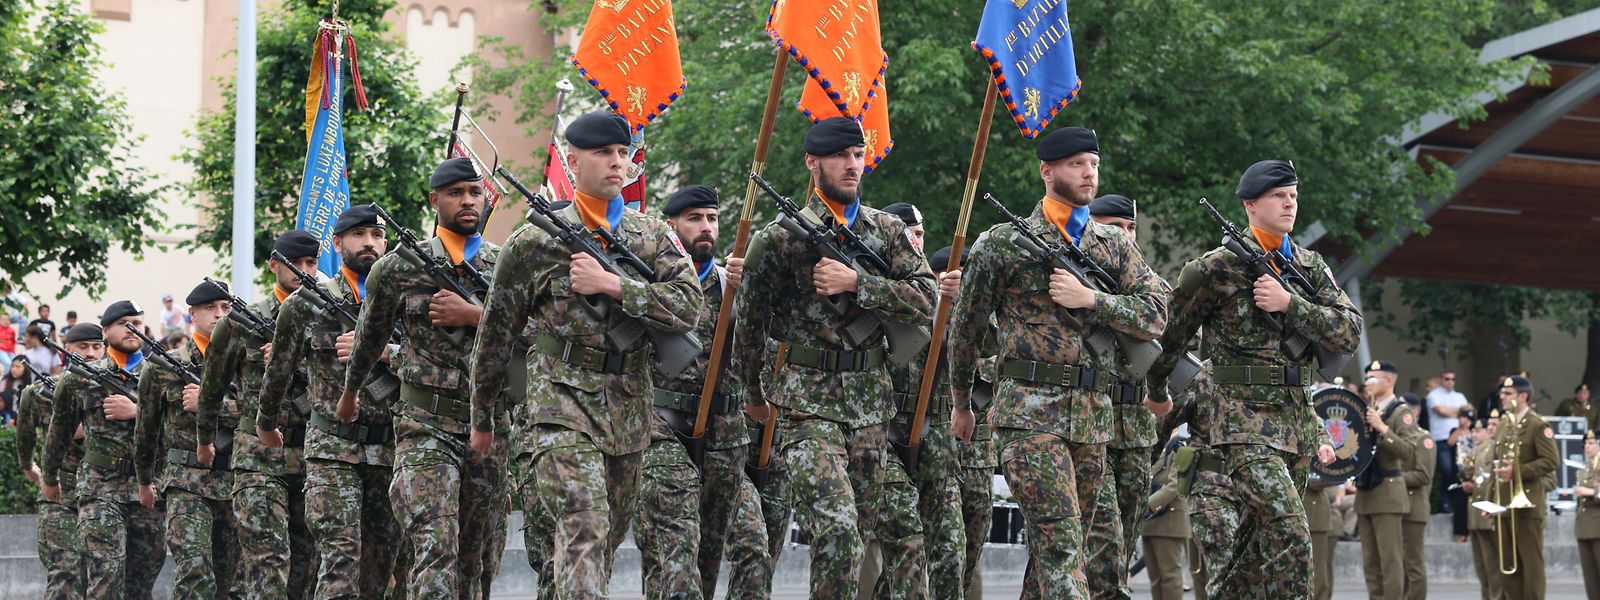 Le défilé de l'armée est toujours un événement particulier à Diekirch.